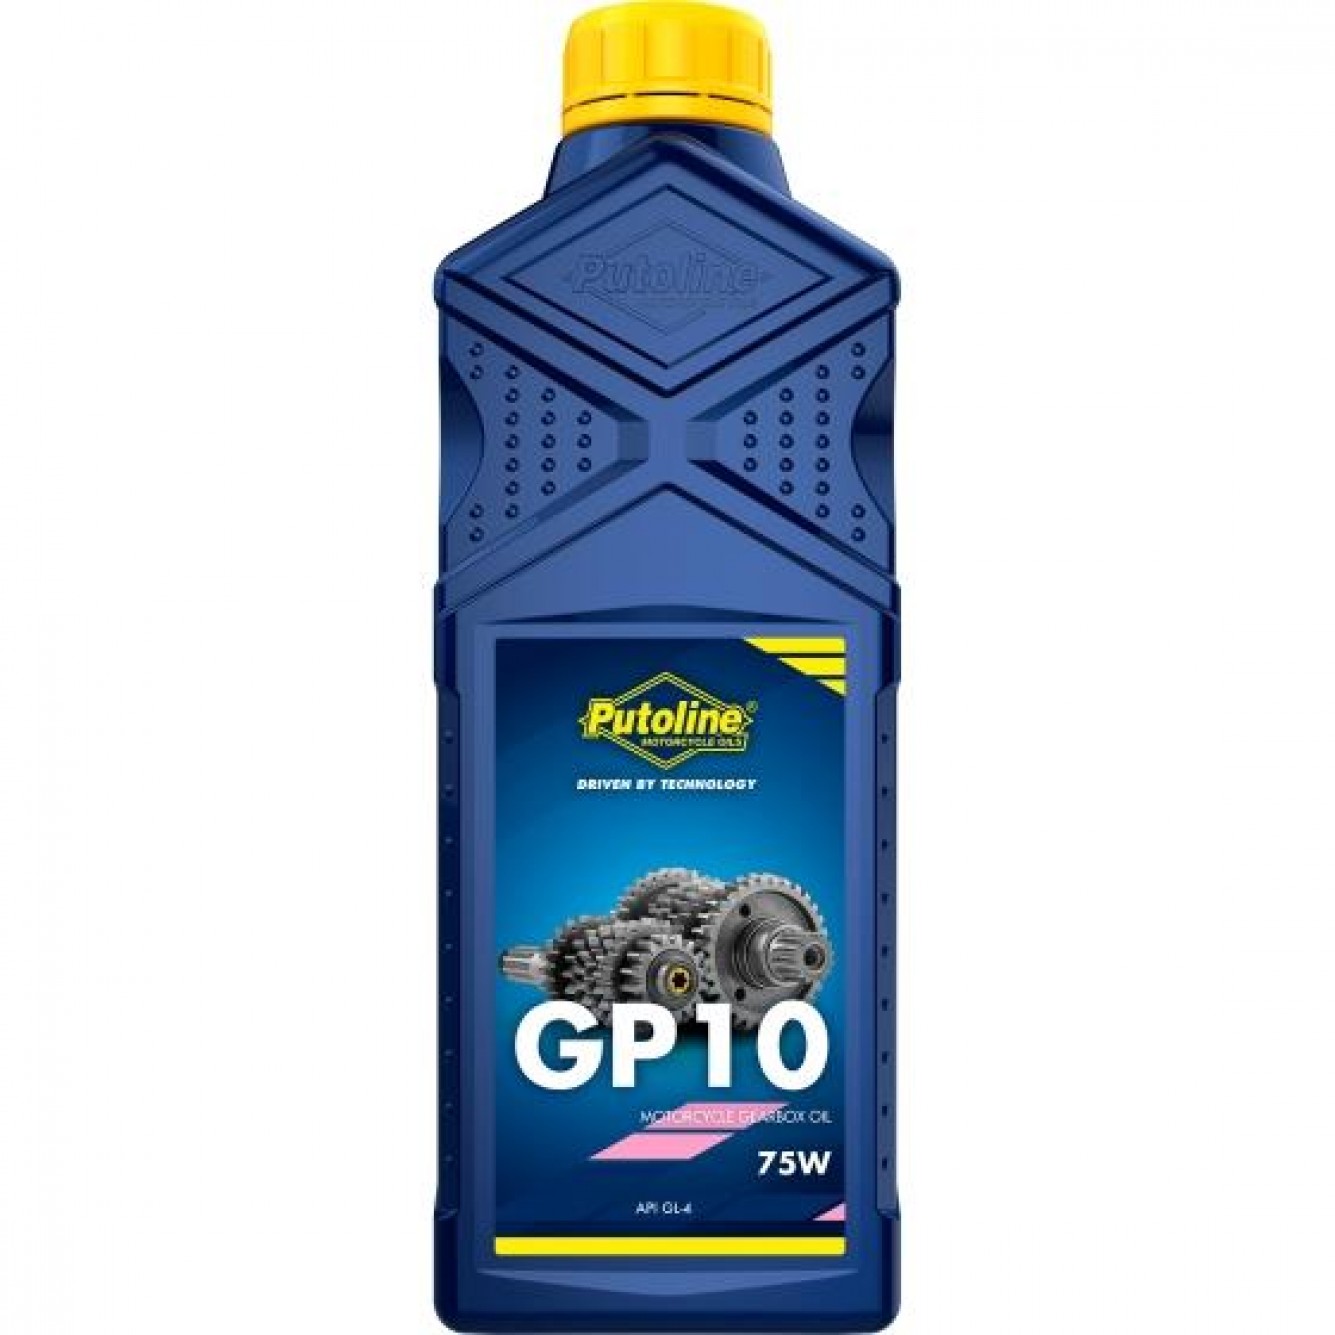 Putoline | GP 10 1ltr